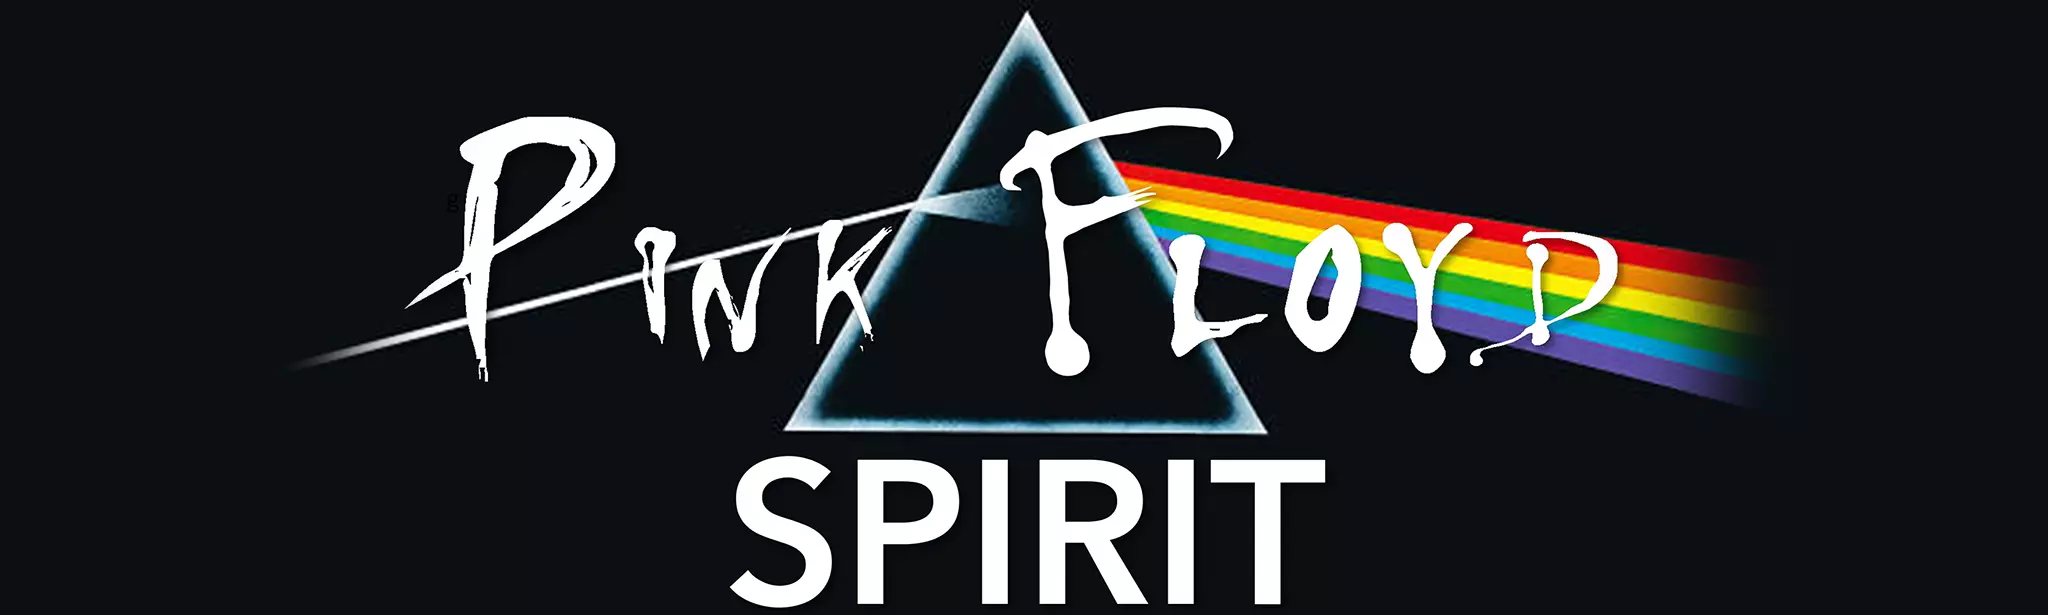 Claude Gérard Production présente Pink Floyd Spirit